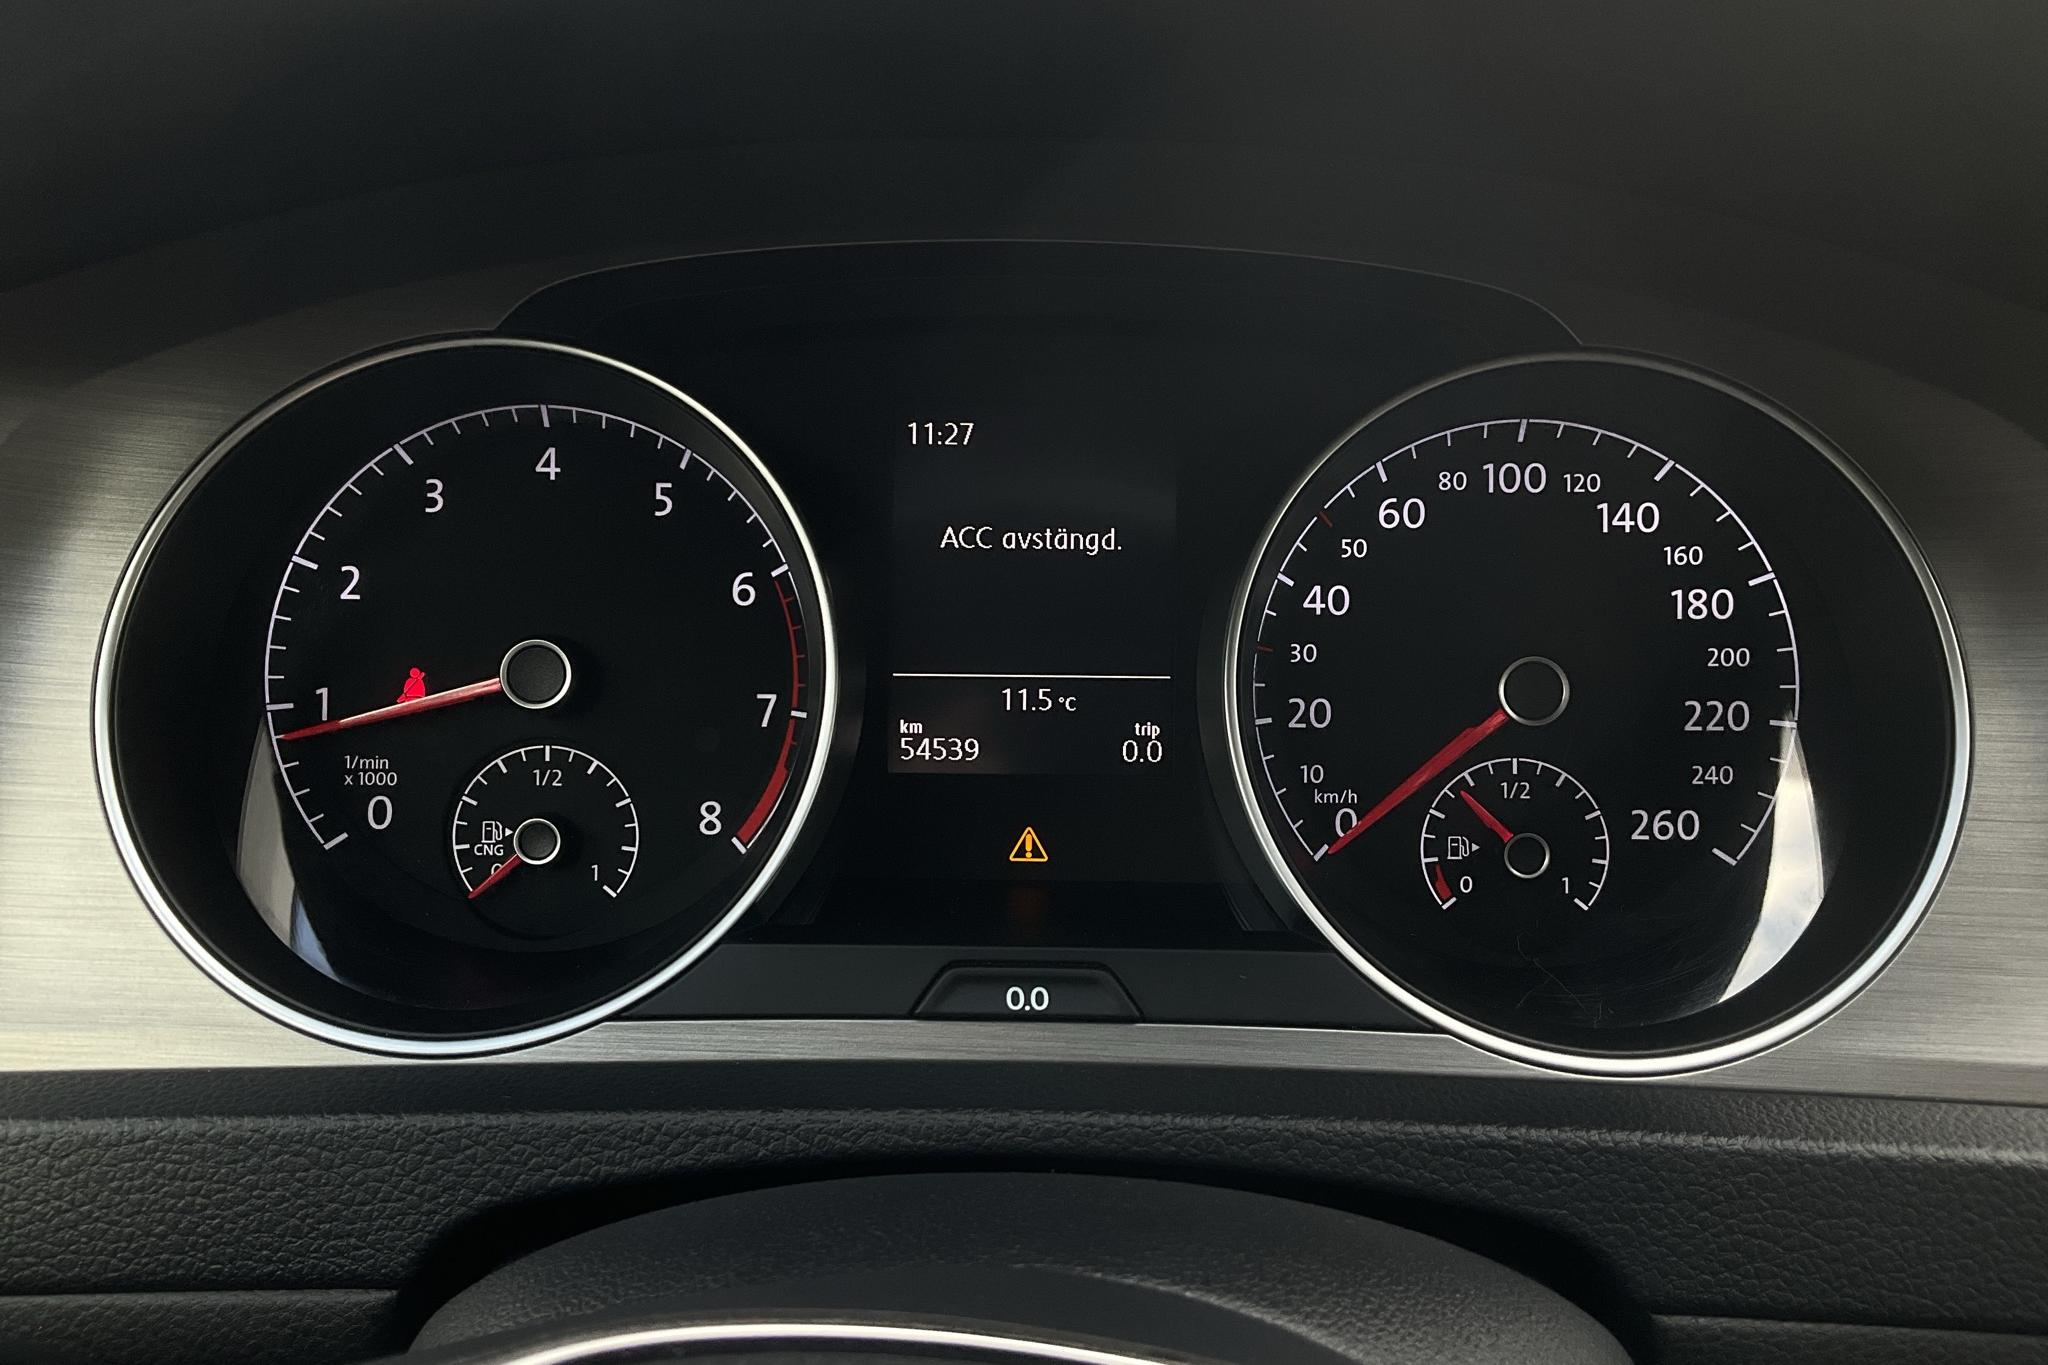 VW Golf VII 1.4 TGI 5dr (110hk) - 54 530 km - Manual - black - 2015